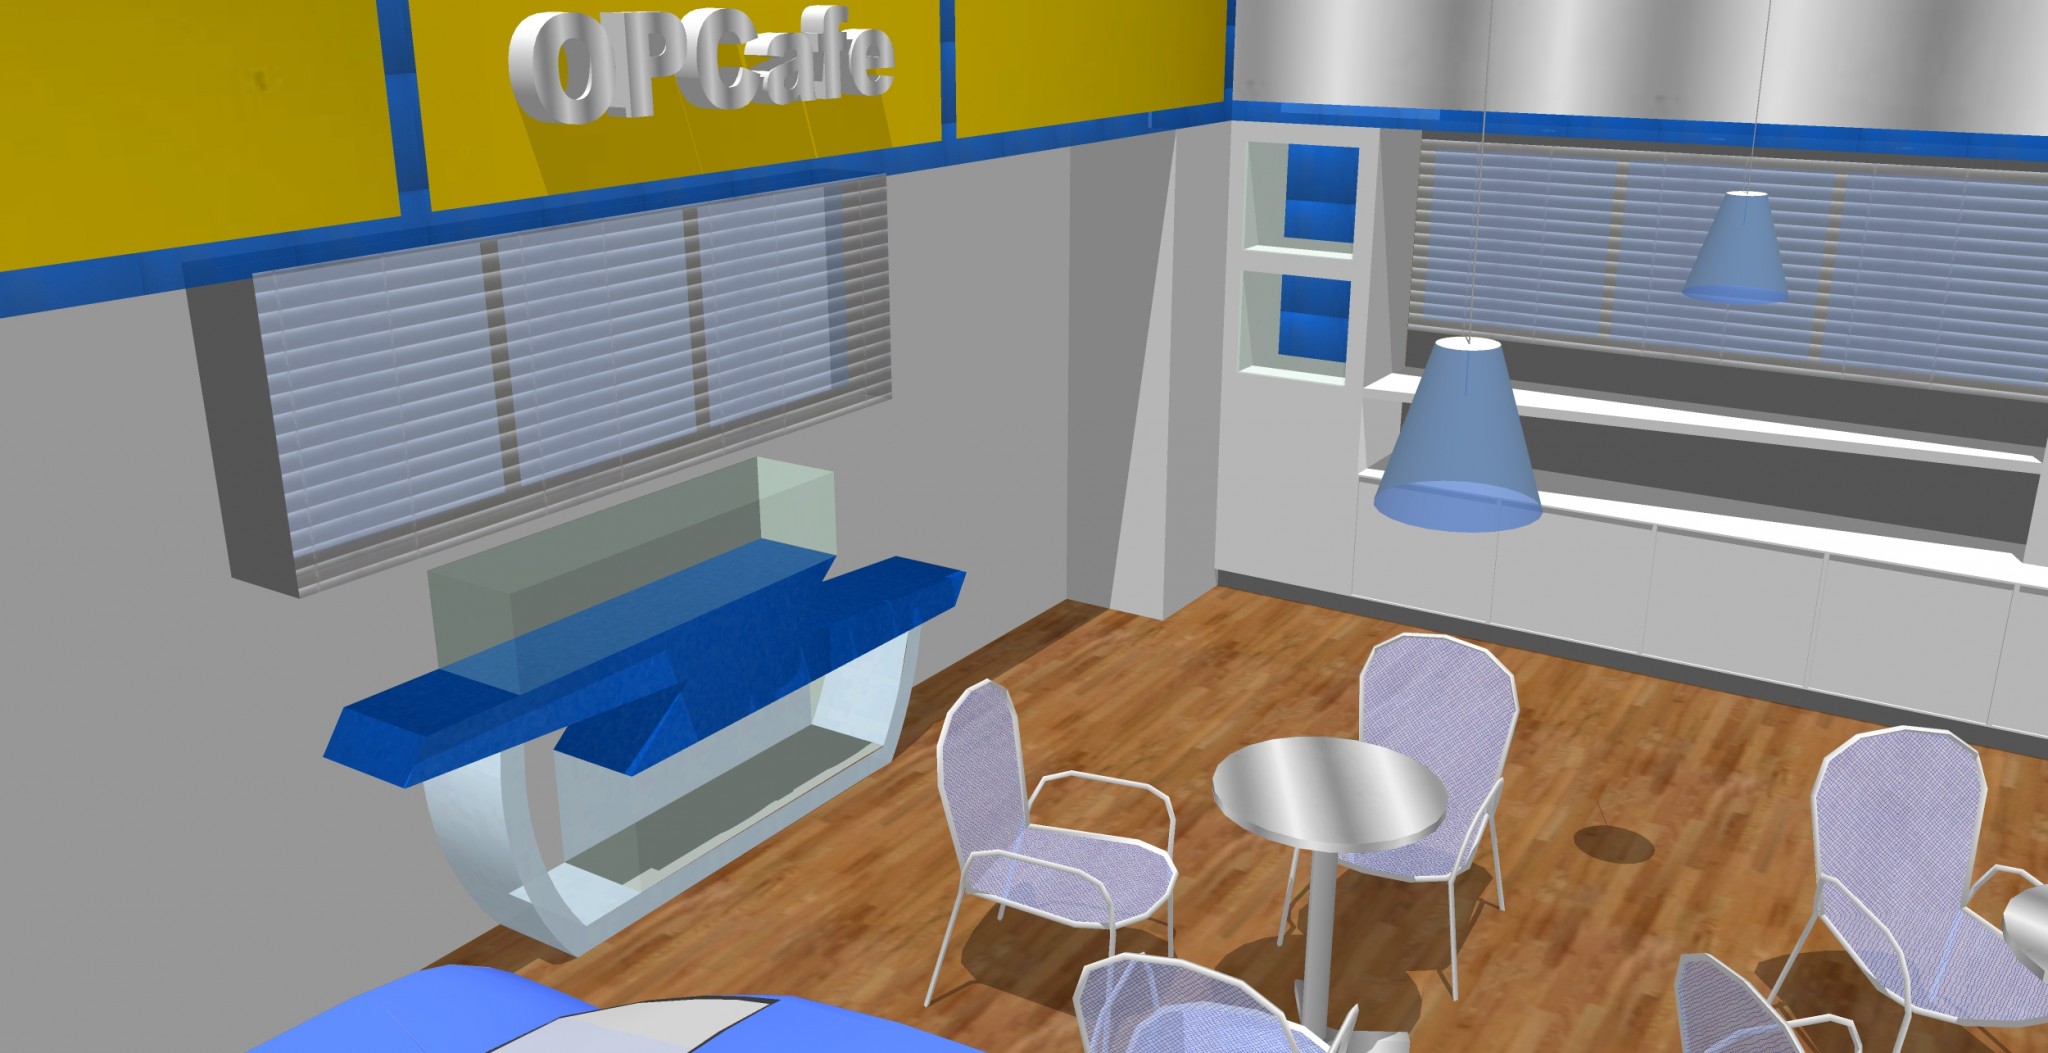 Interior design proposal for a lobby-café